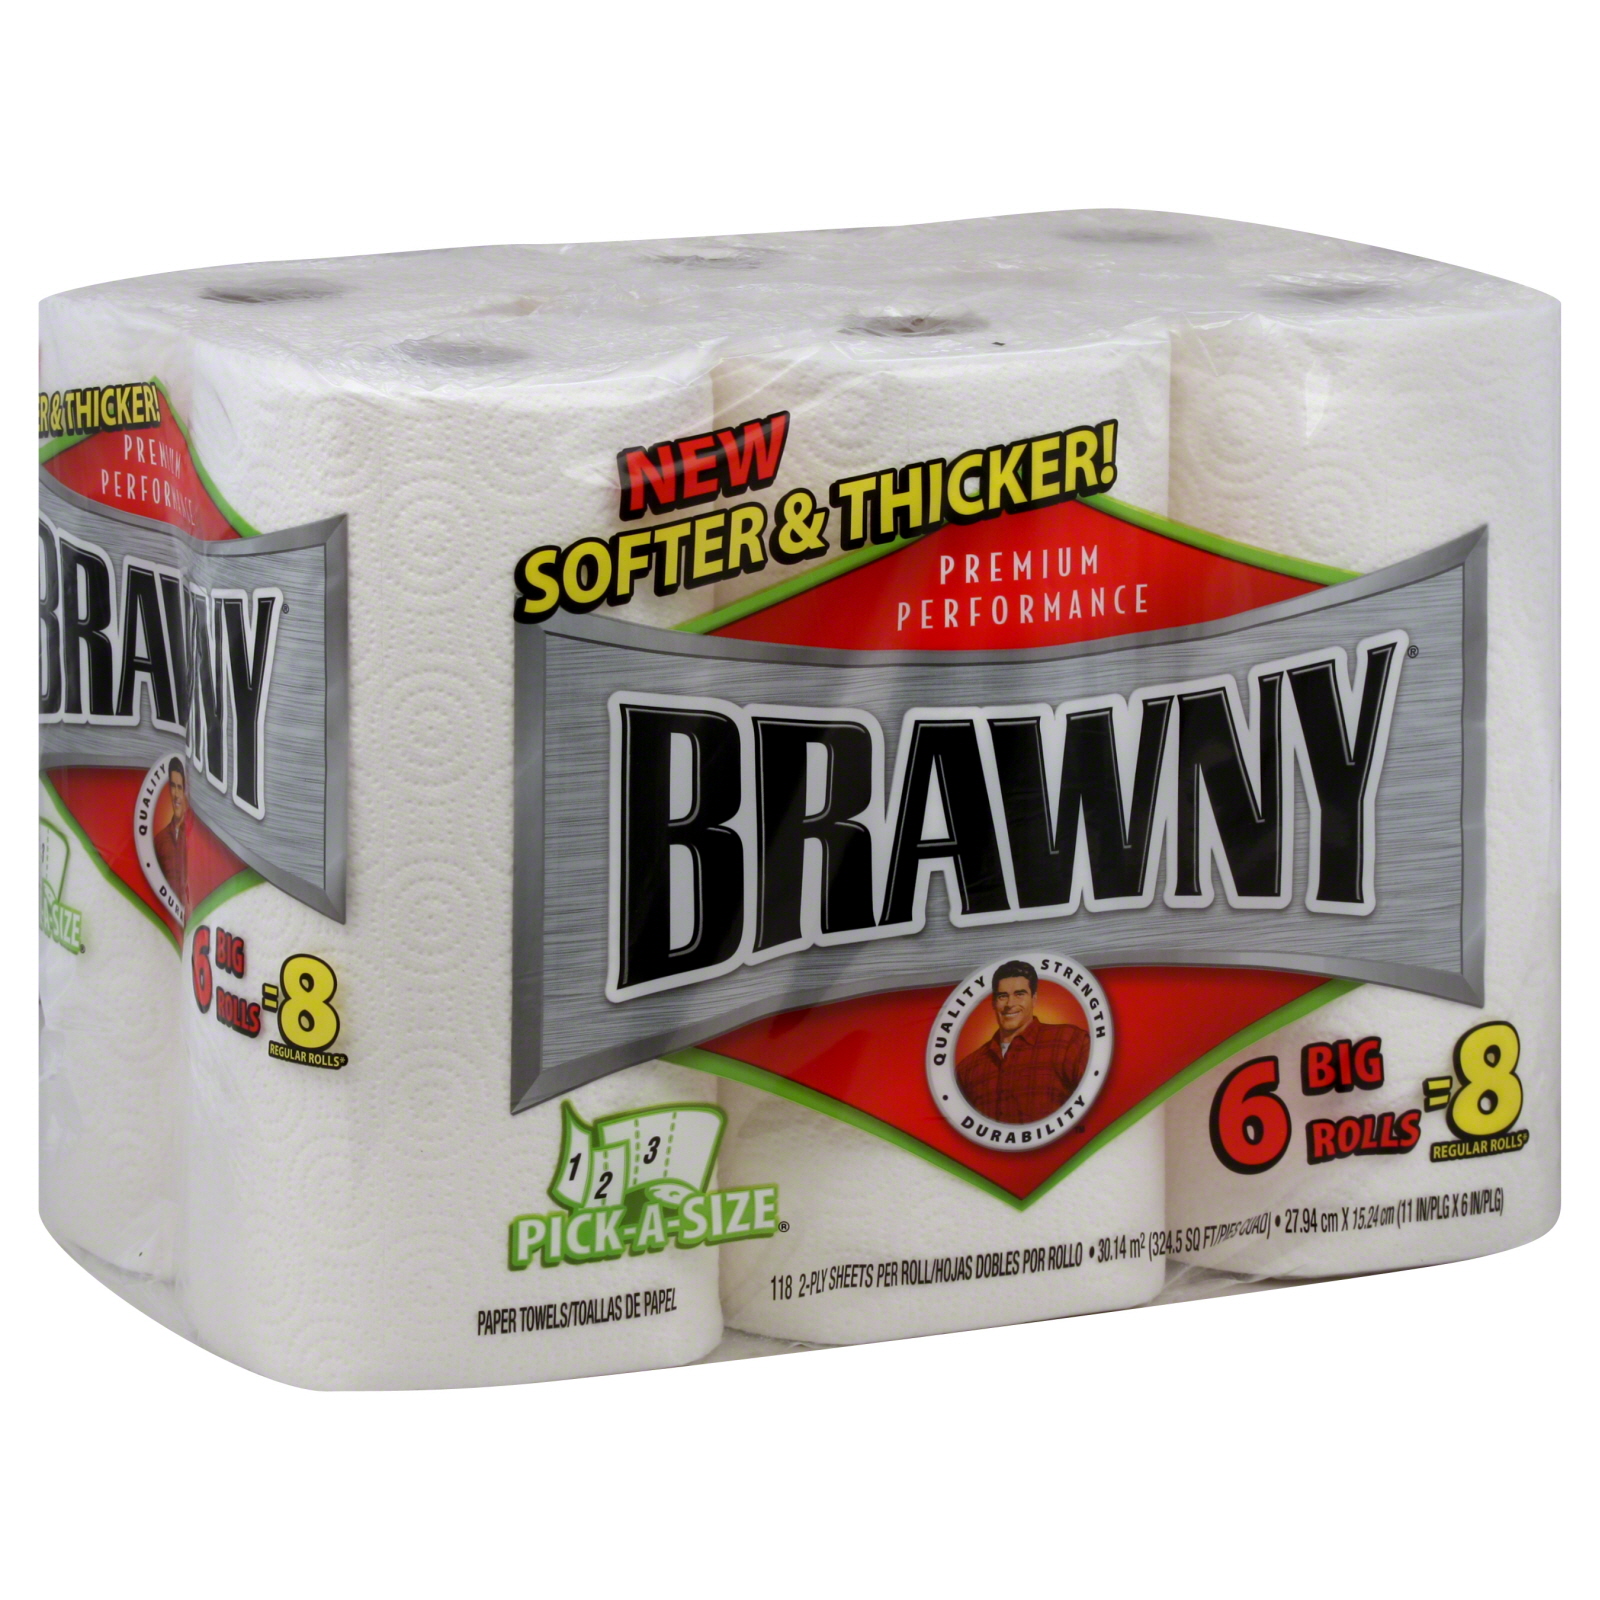 Brawny Pick-A-Size Paper Towels, Big Rolls, 2-Ply, 6 rolls